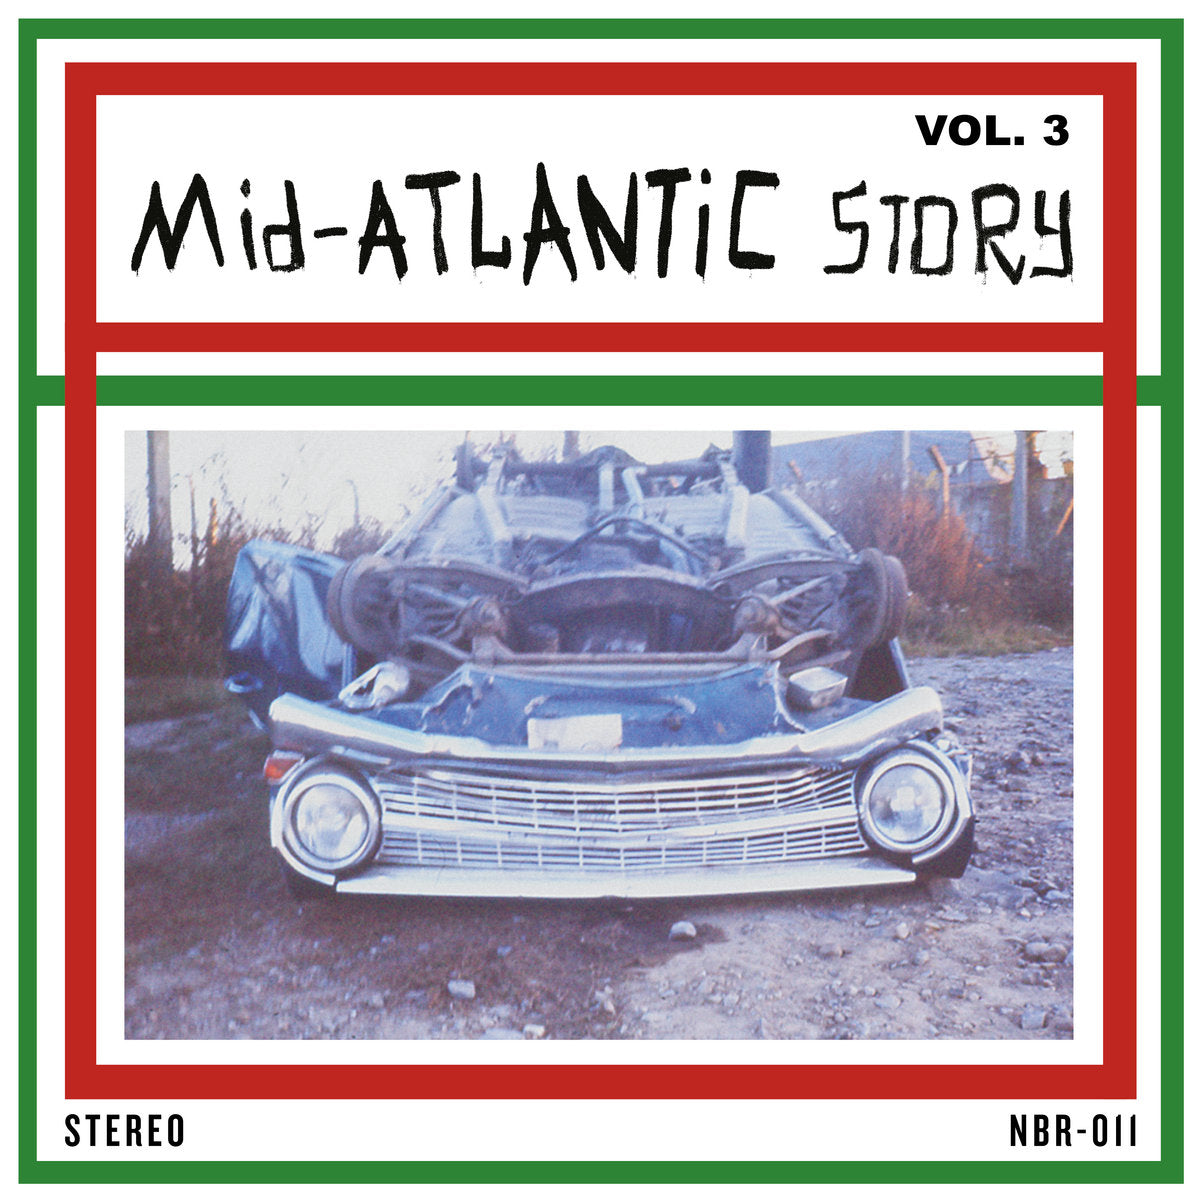 V/A - MID-ATLANTIC STORY VOL. 3 Vinyl LP